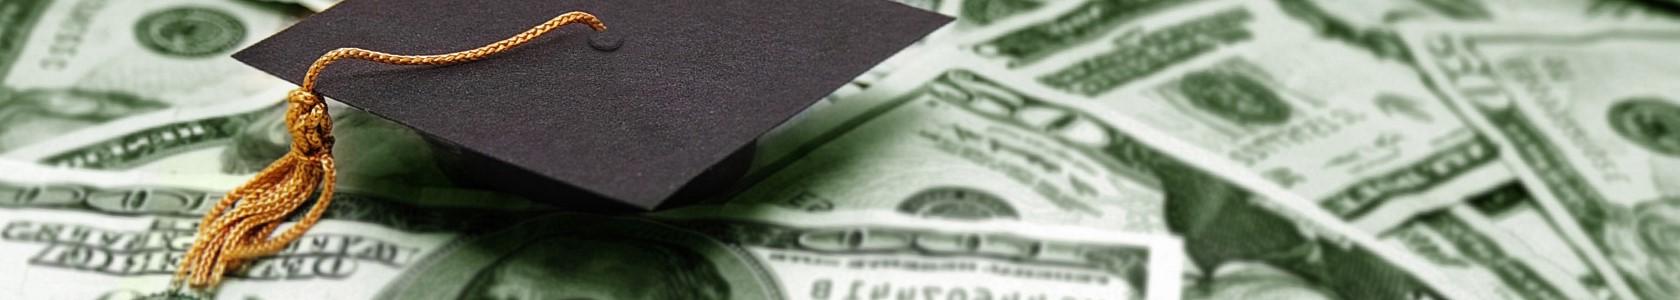 money and a graduation cap